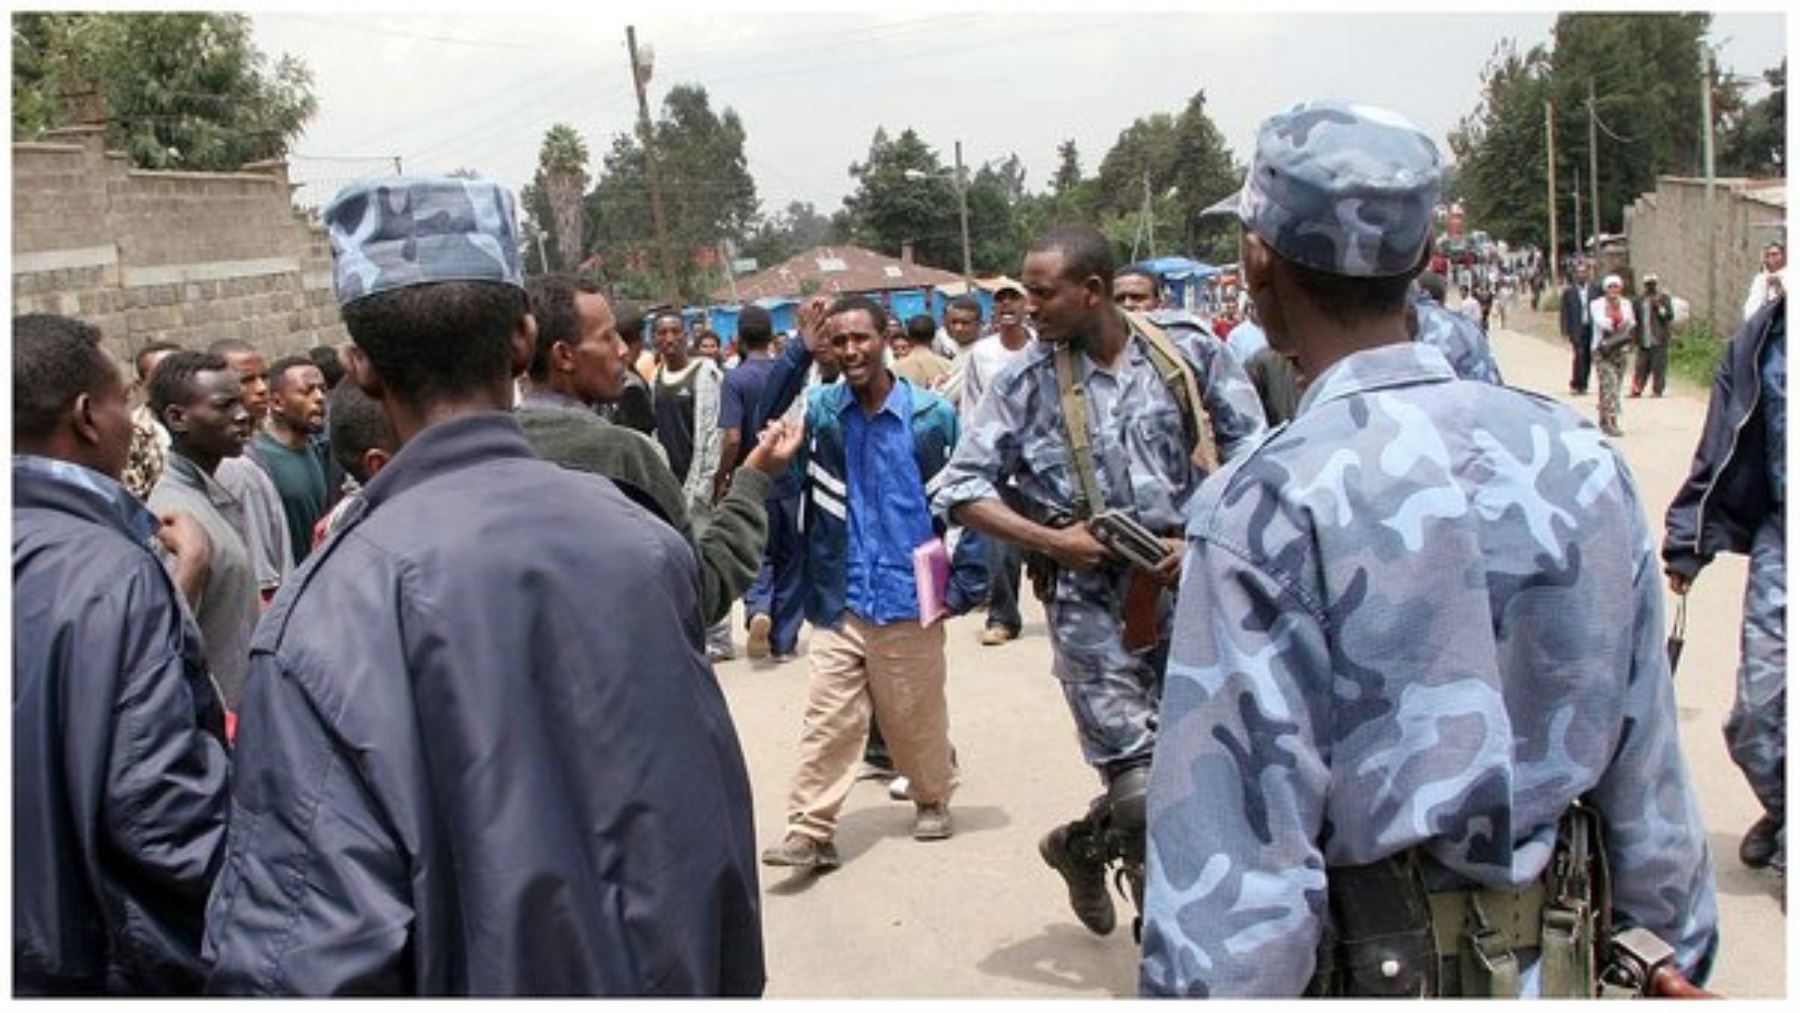 El gobierno etíope declara el estado de emergencia, tras varios meses de violentos disturbios en el país africano. AFP